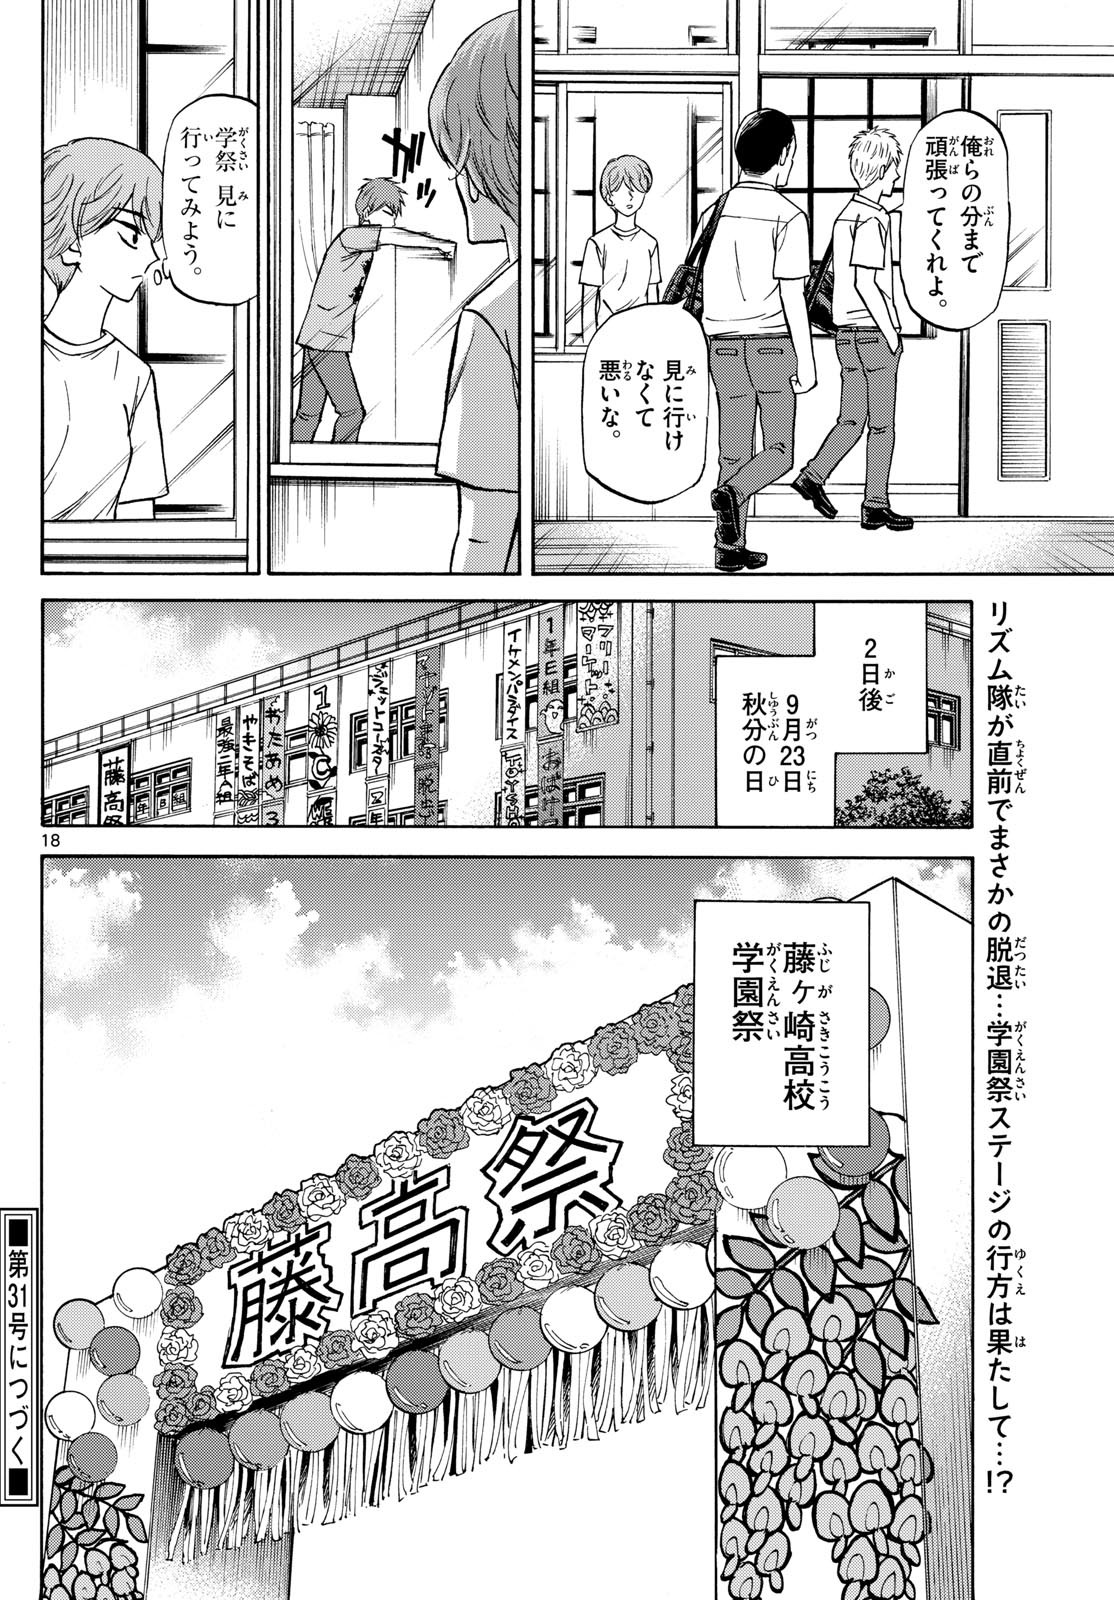 Ryu-to-Ichigo - Chapter 148 - Page 18